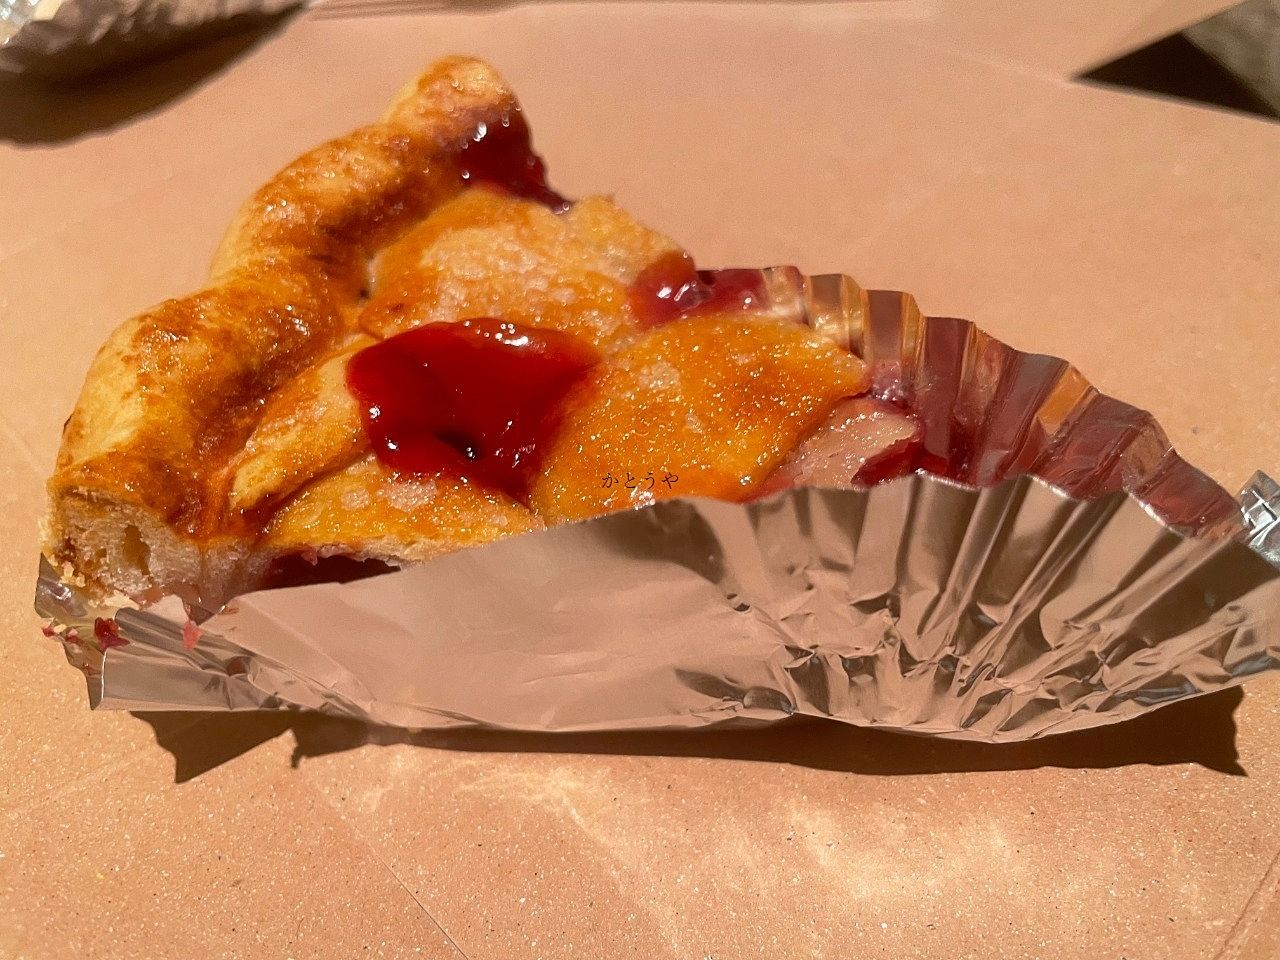 流山セントラルパーク駅前不動産店かとうや、横浜ランドマークタワーのBubby'sのチェリーパイを食べに行きました